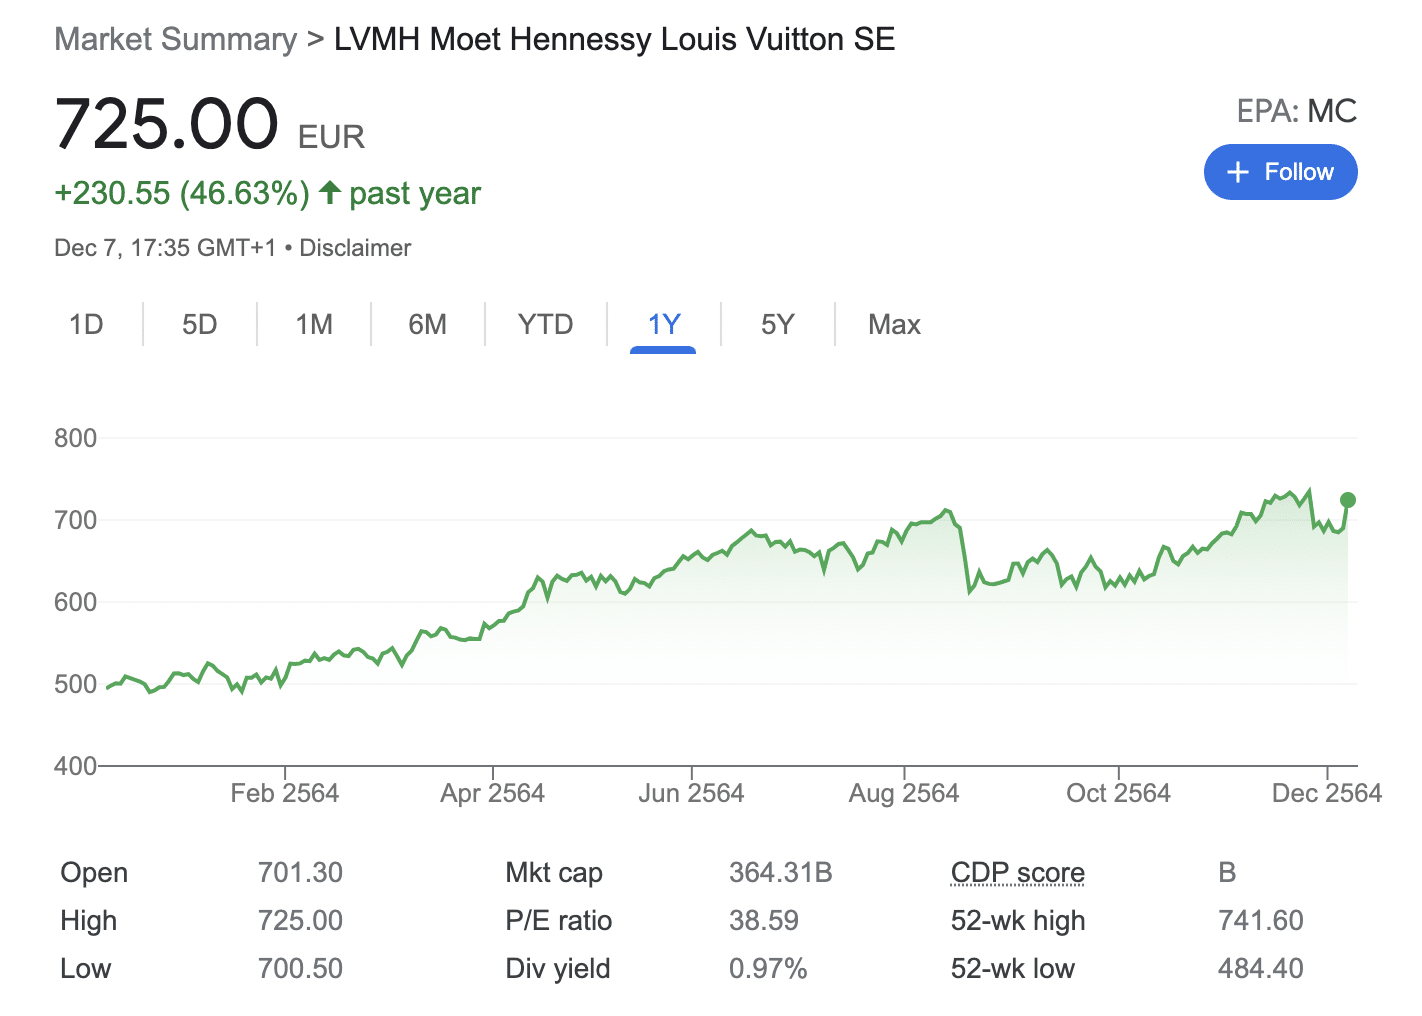 LVMH Moet Hennessy Louis Vuitton stocks